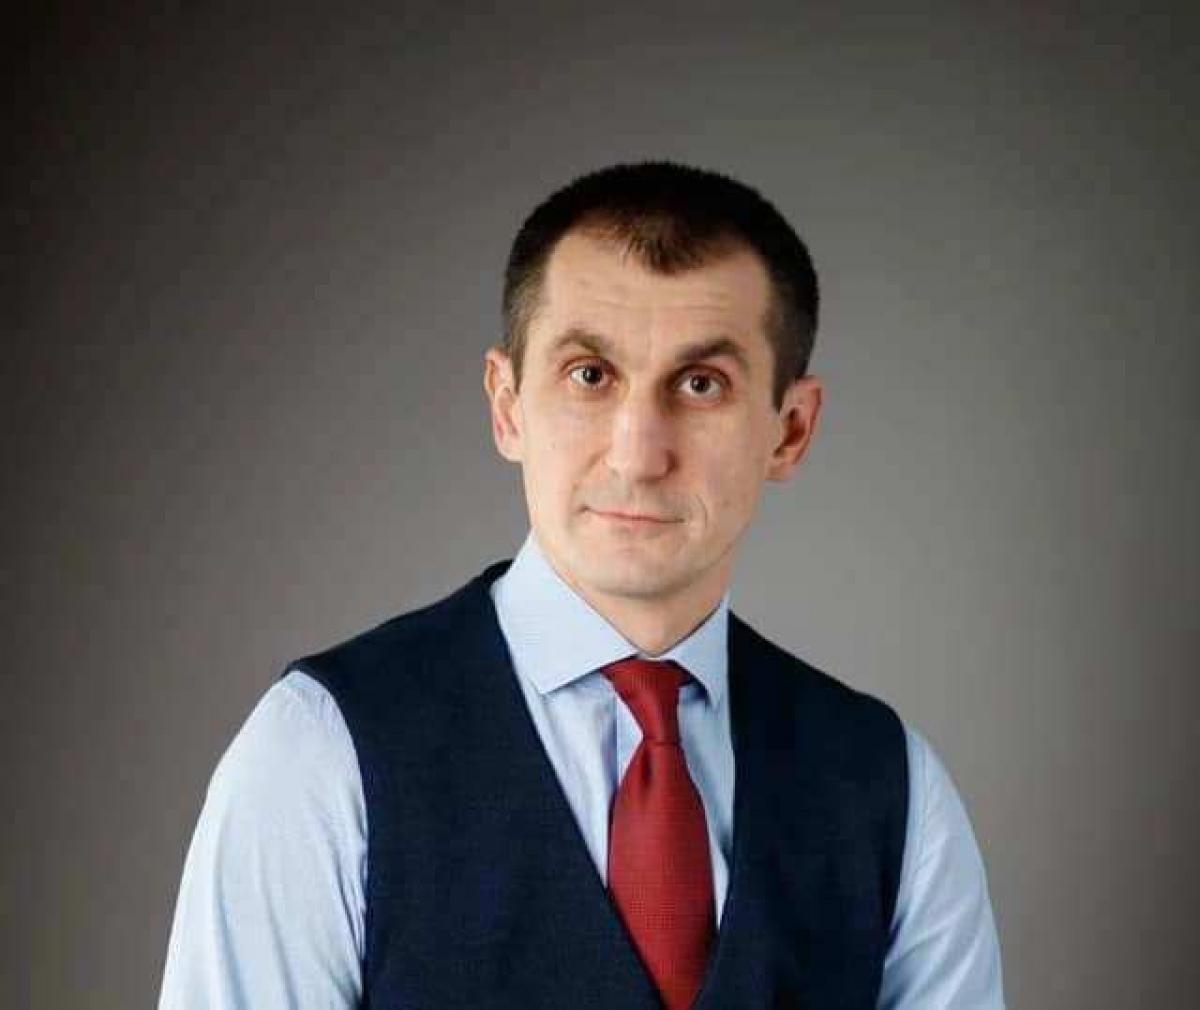 Николай Скворцов: «Саратов делают городом для жизни, но без бизнеса и промышленности» 